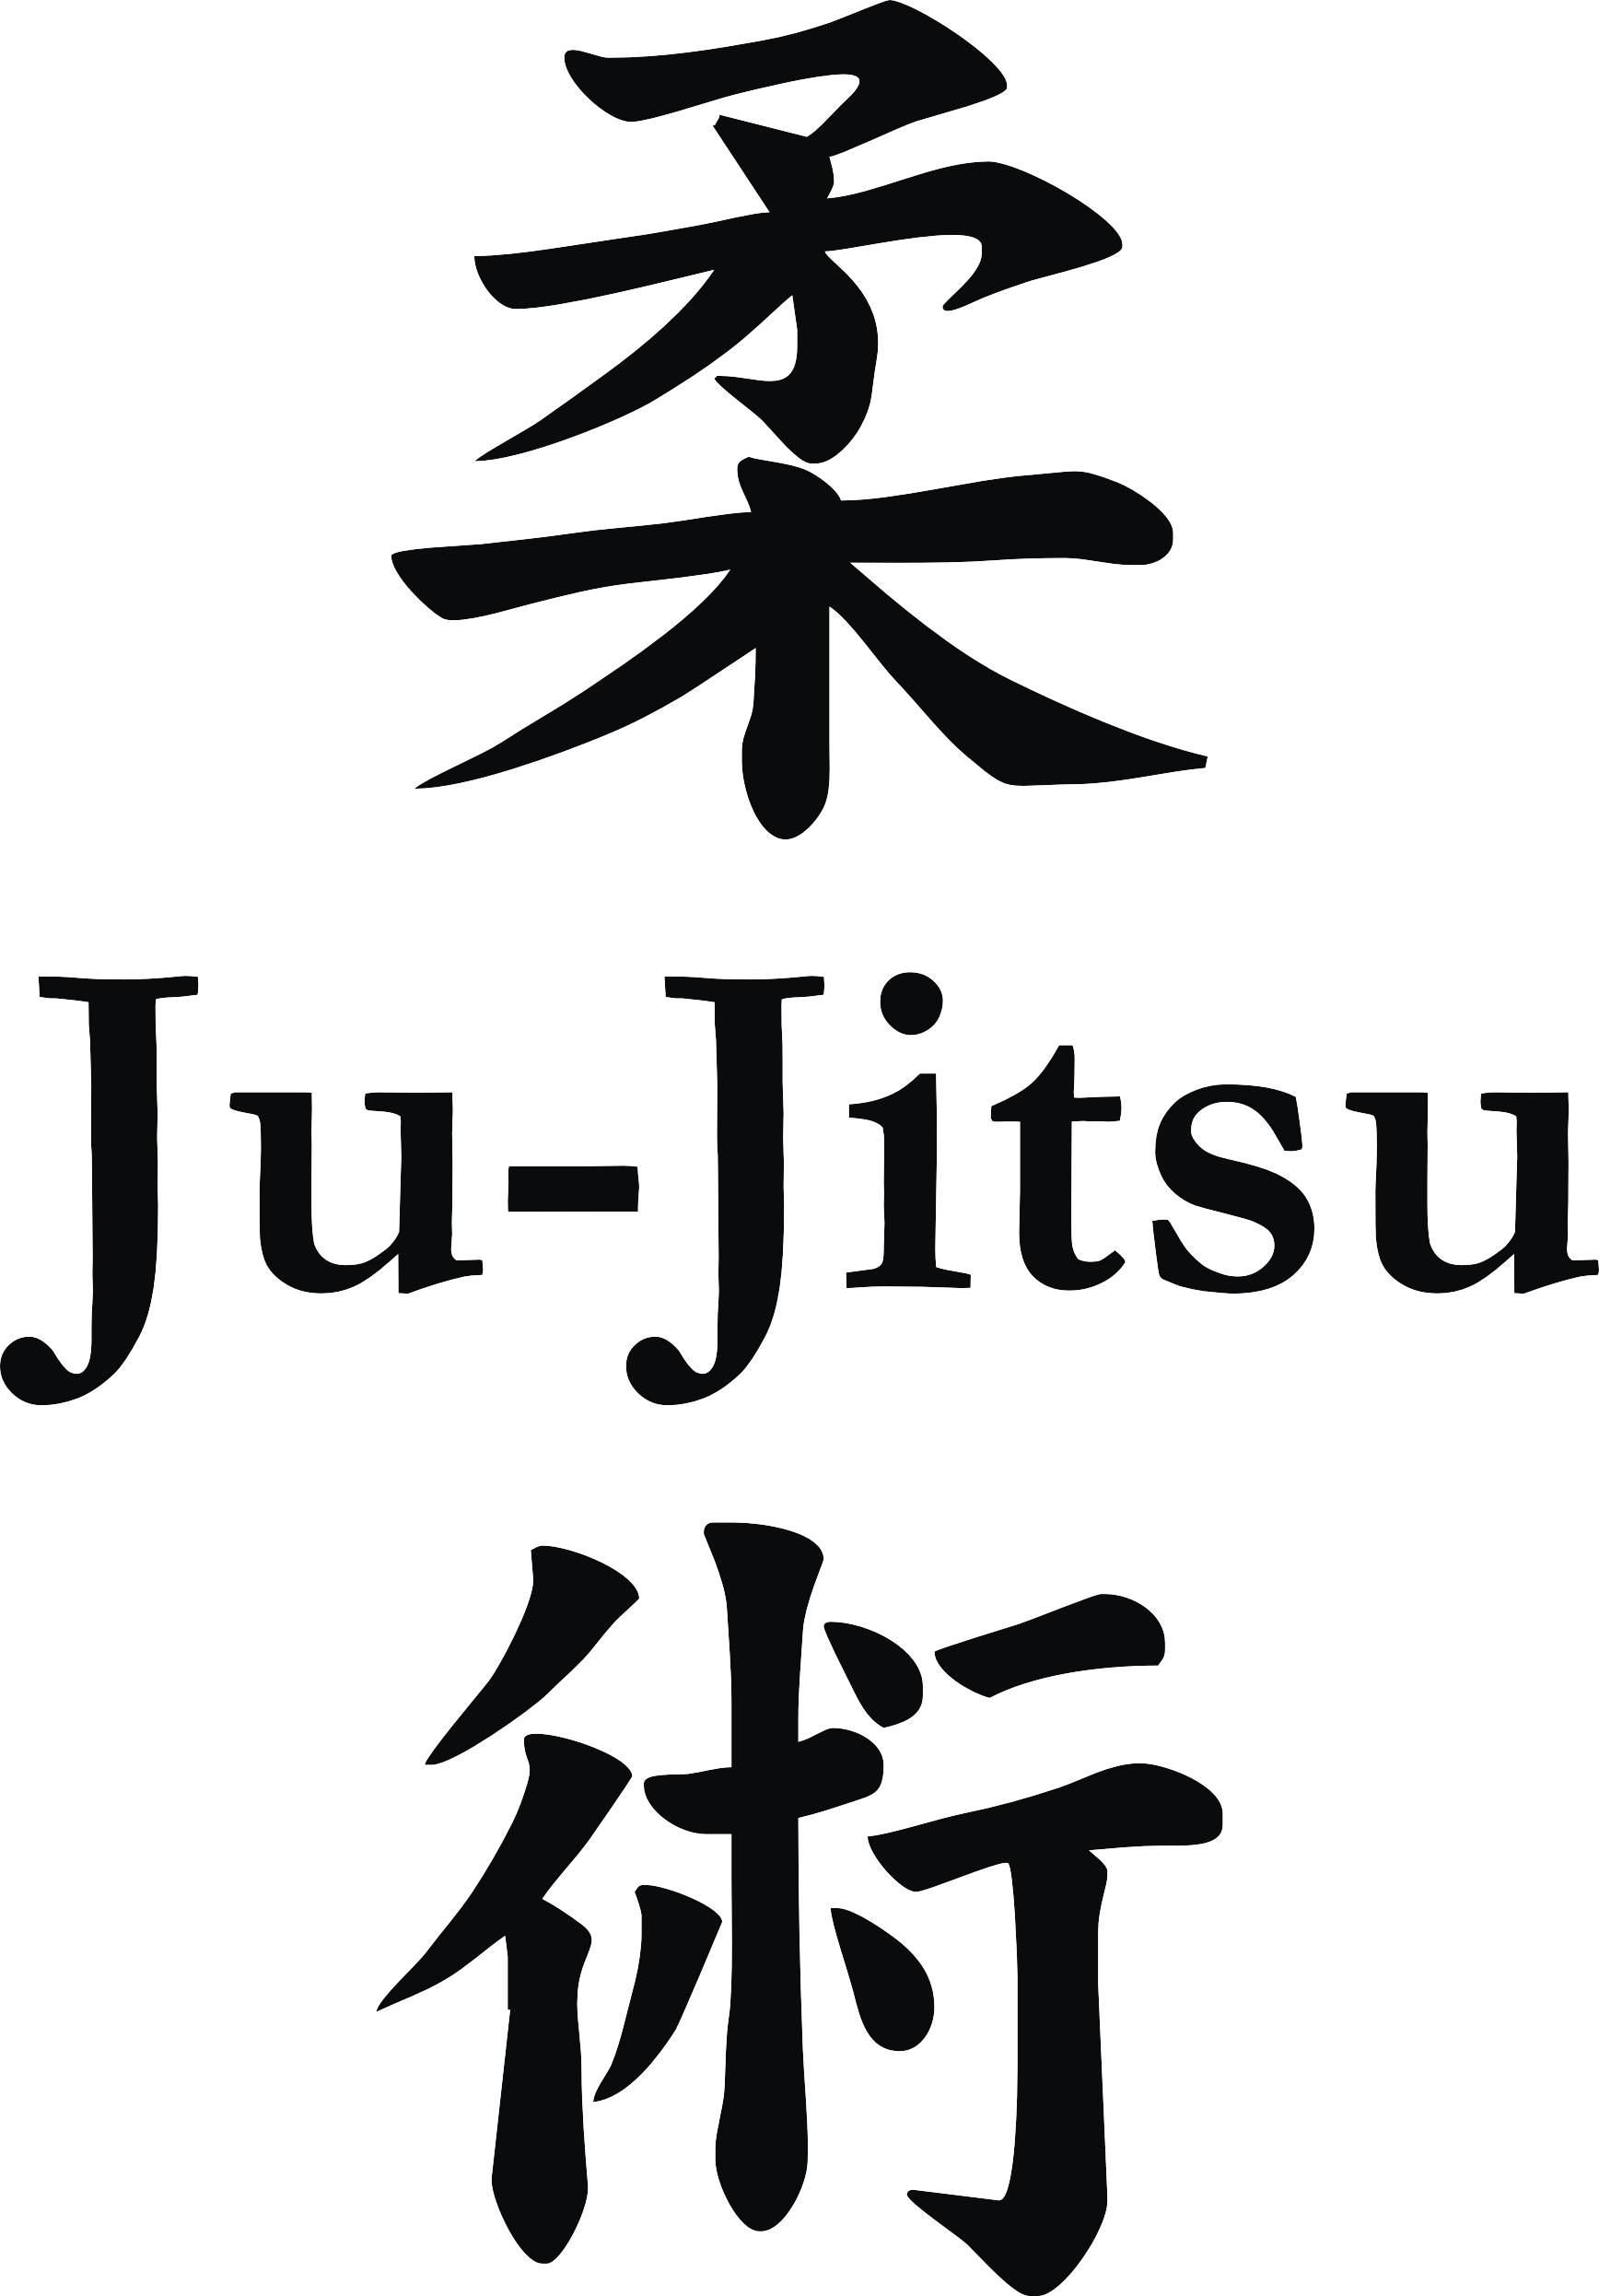 Ju-Jitsu